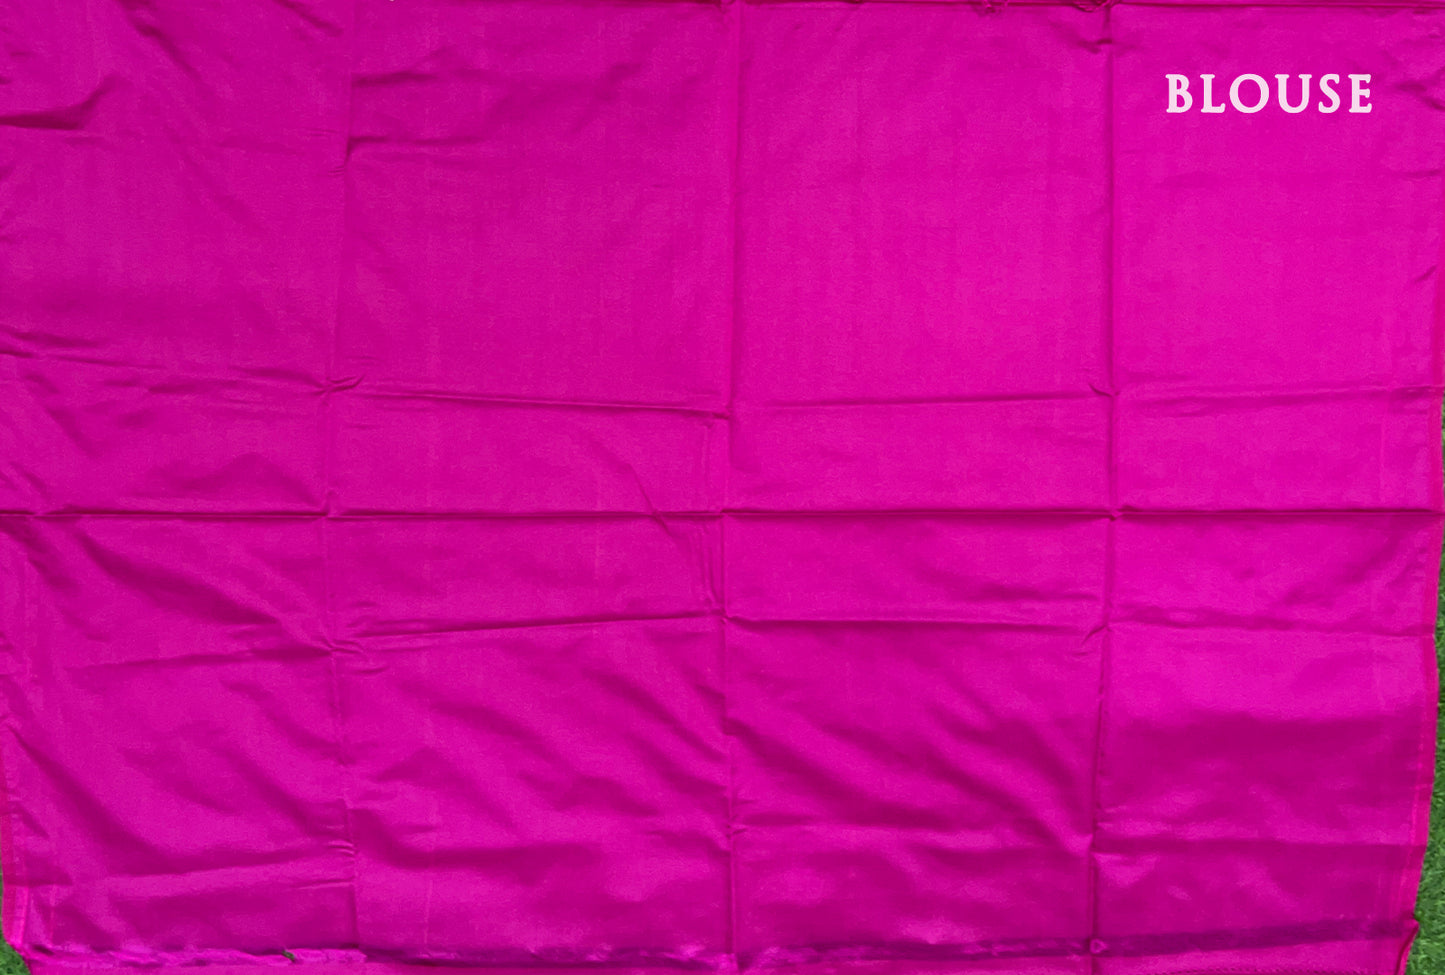 Green with Rani Pink Kanchipuram semi soft silk saree